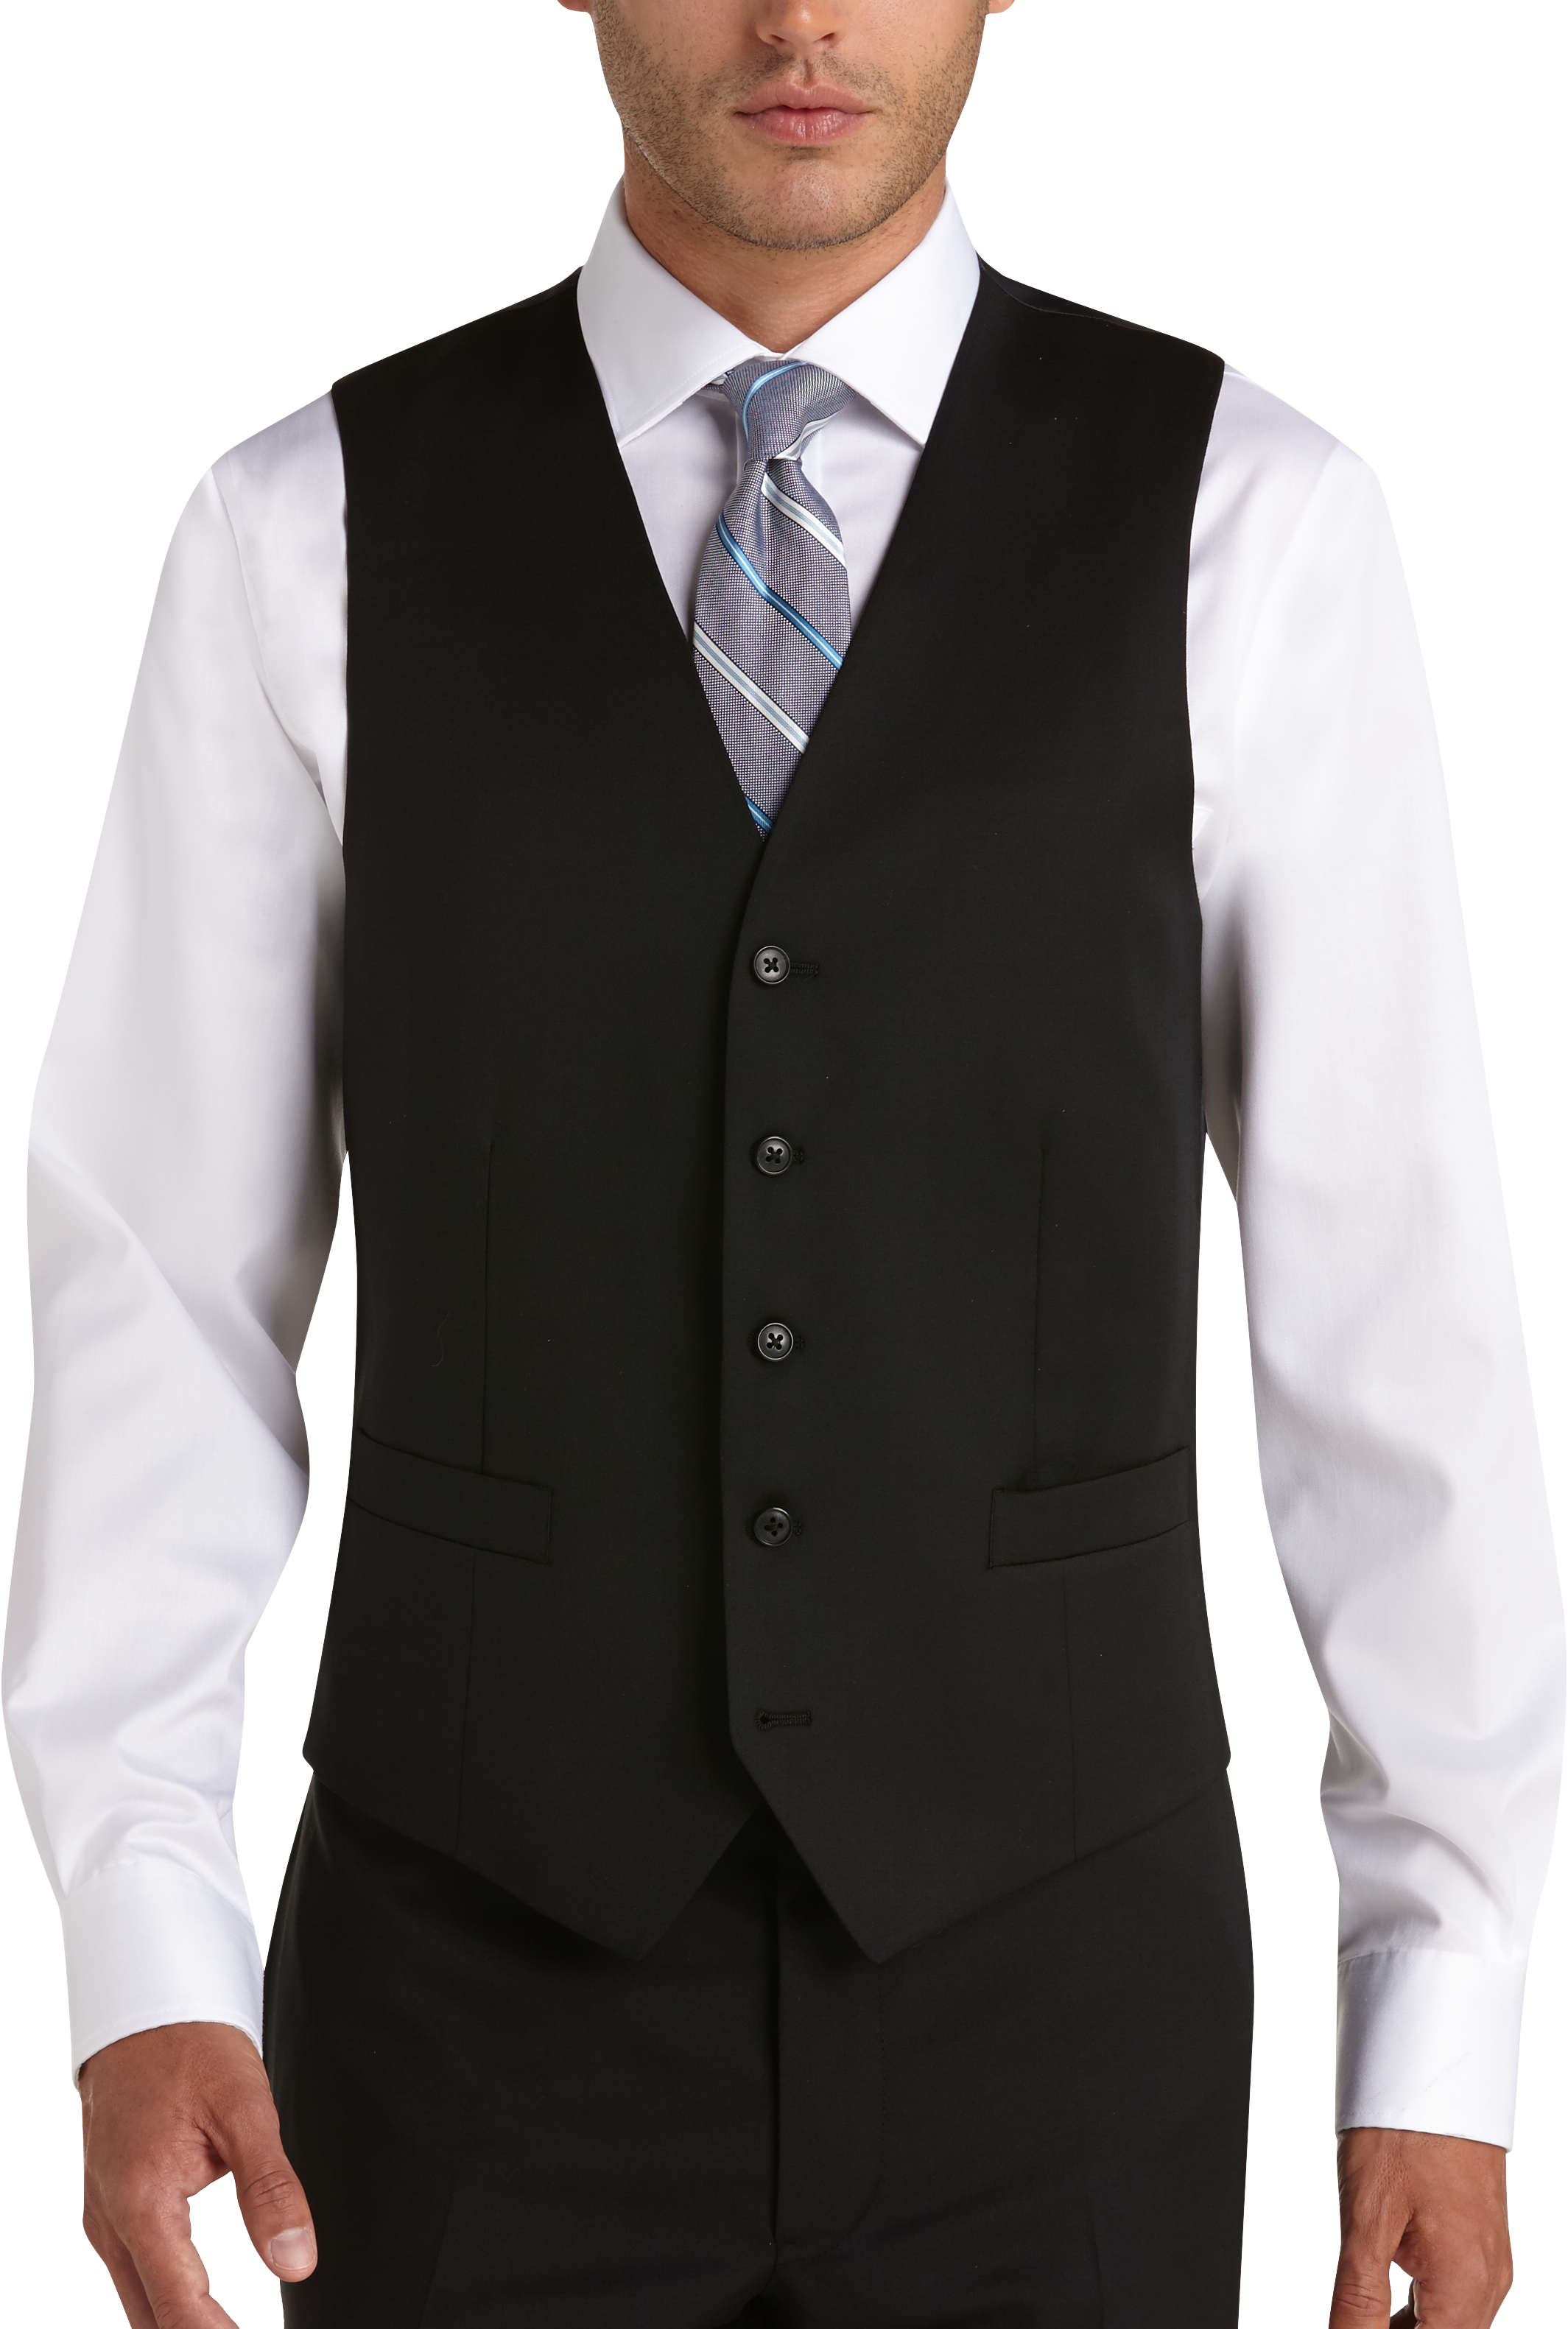 Joseph Abboud Black Modern Fit Suit Separates Vest - Men's Suit ...